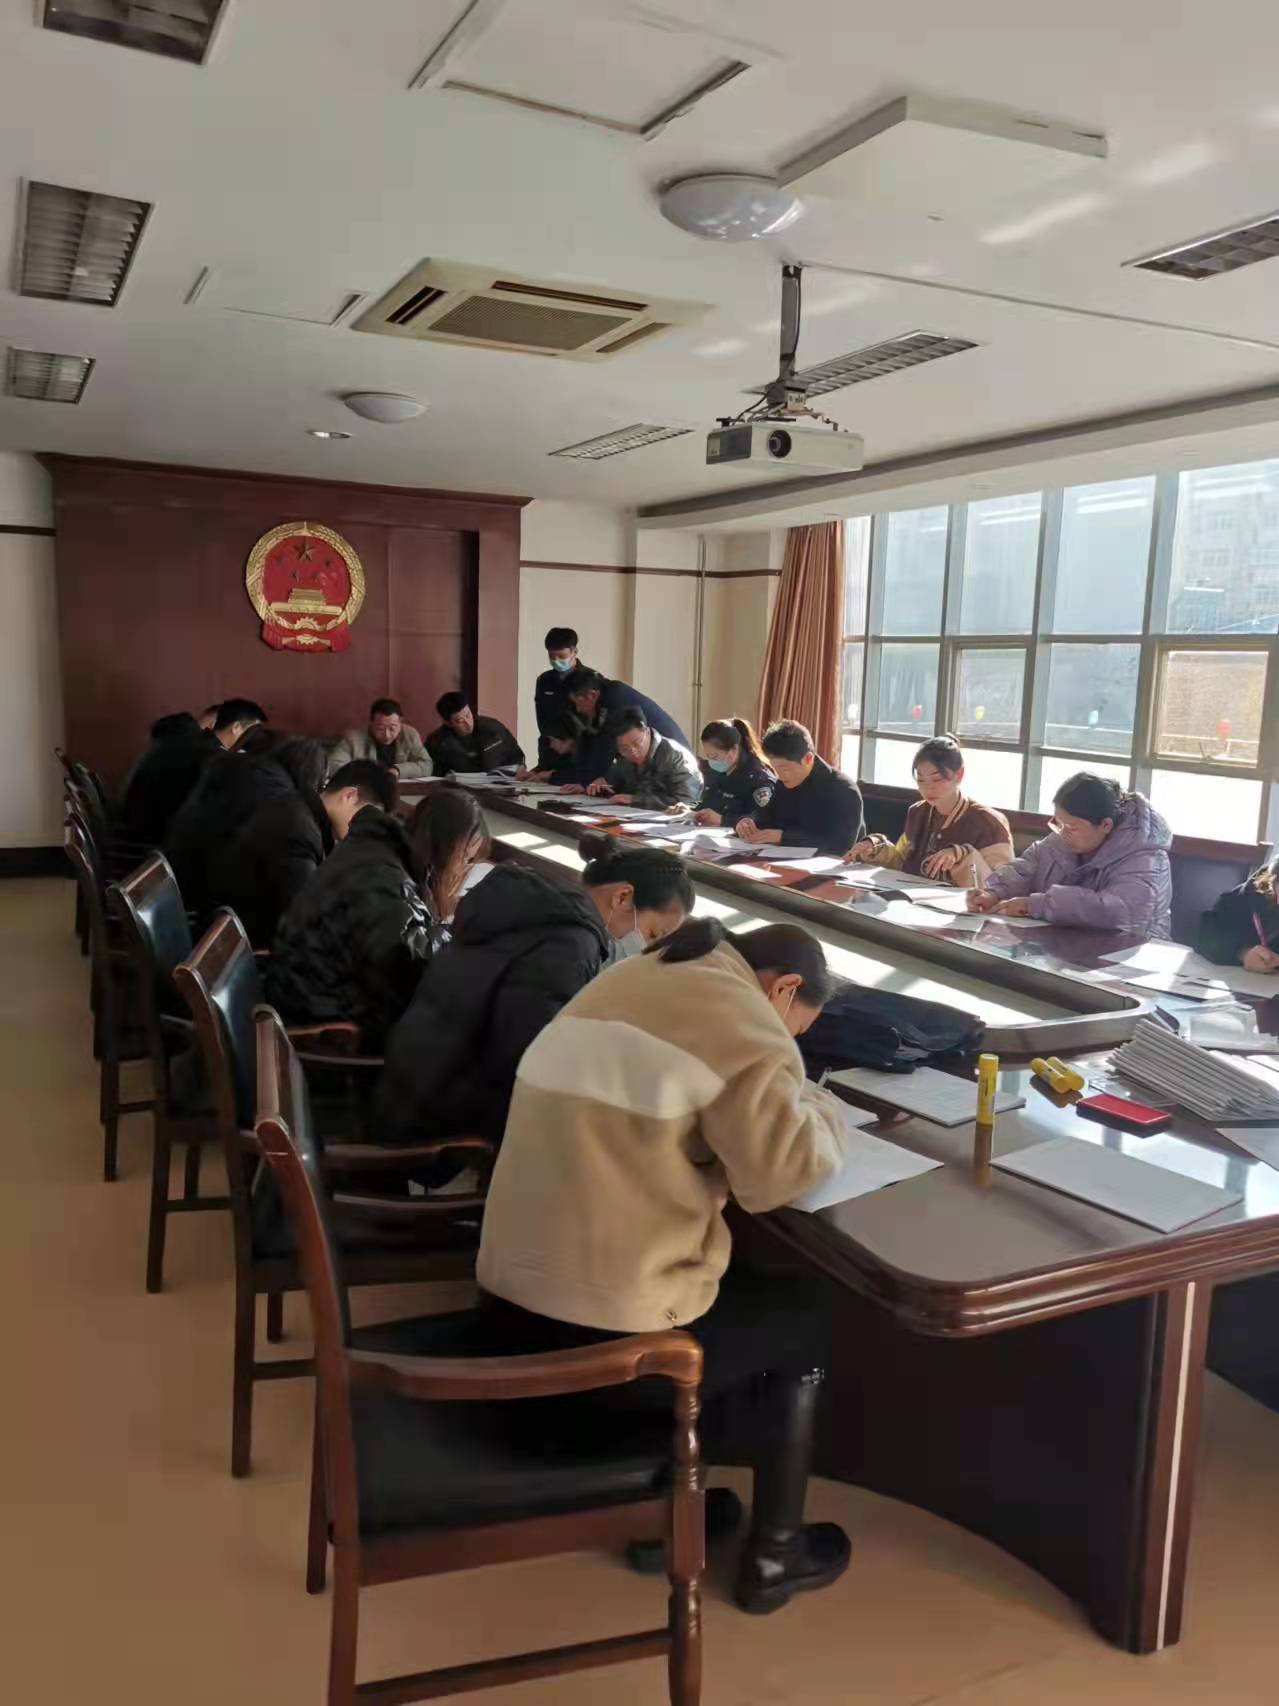 济南市钢城区人民法院签订劳动合同现场IMG_5824(20211201-221608).JPG